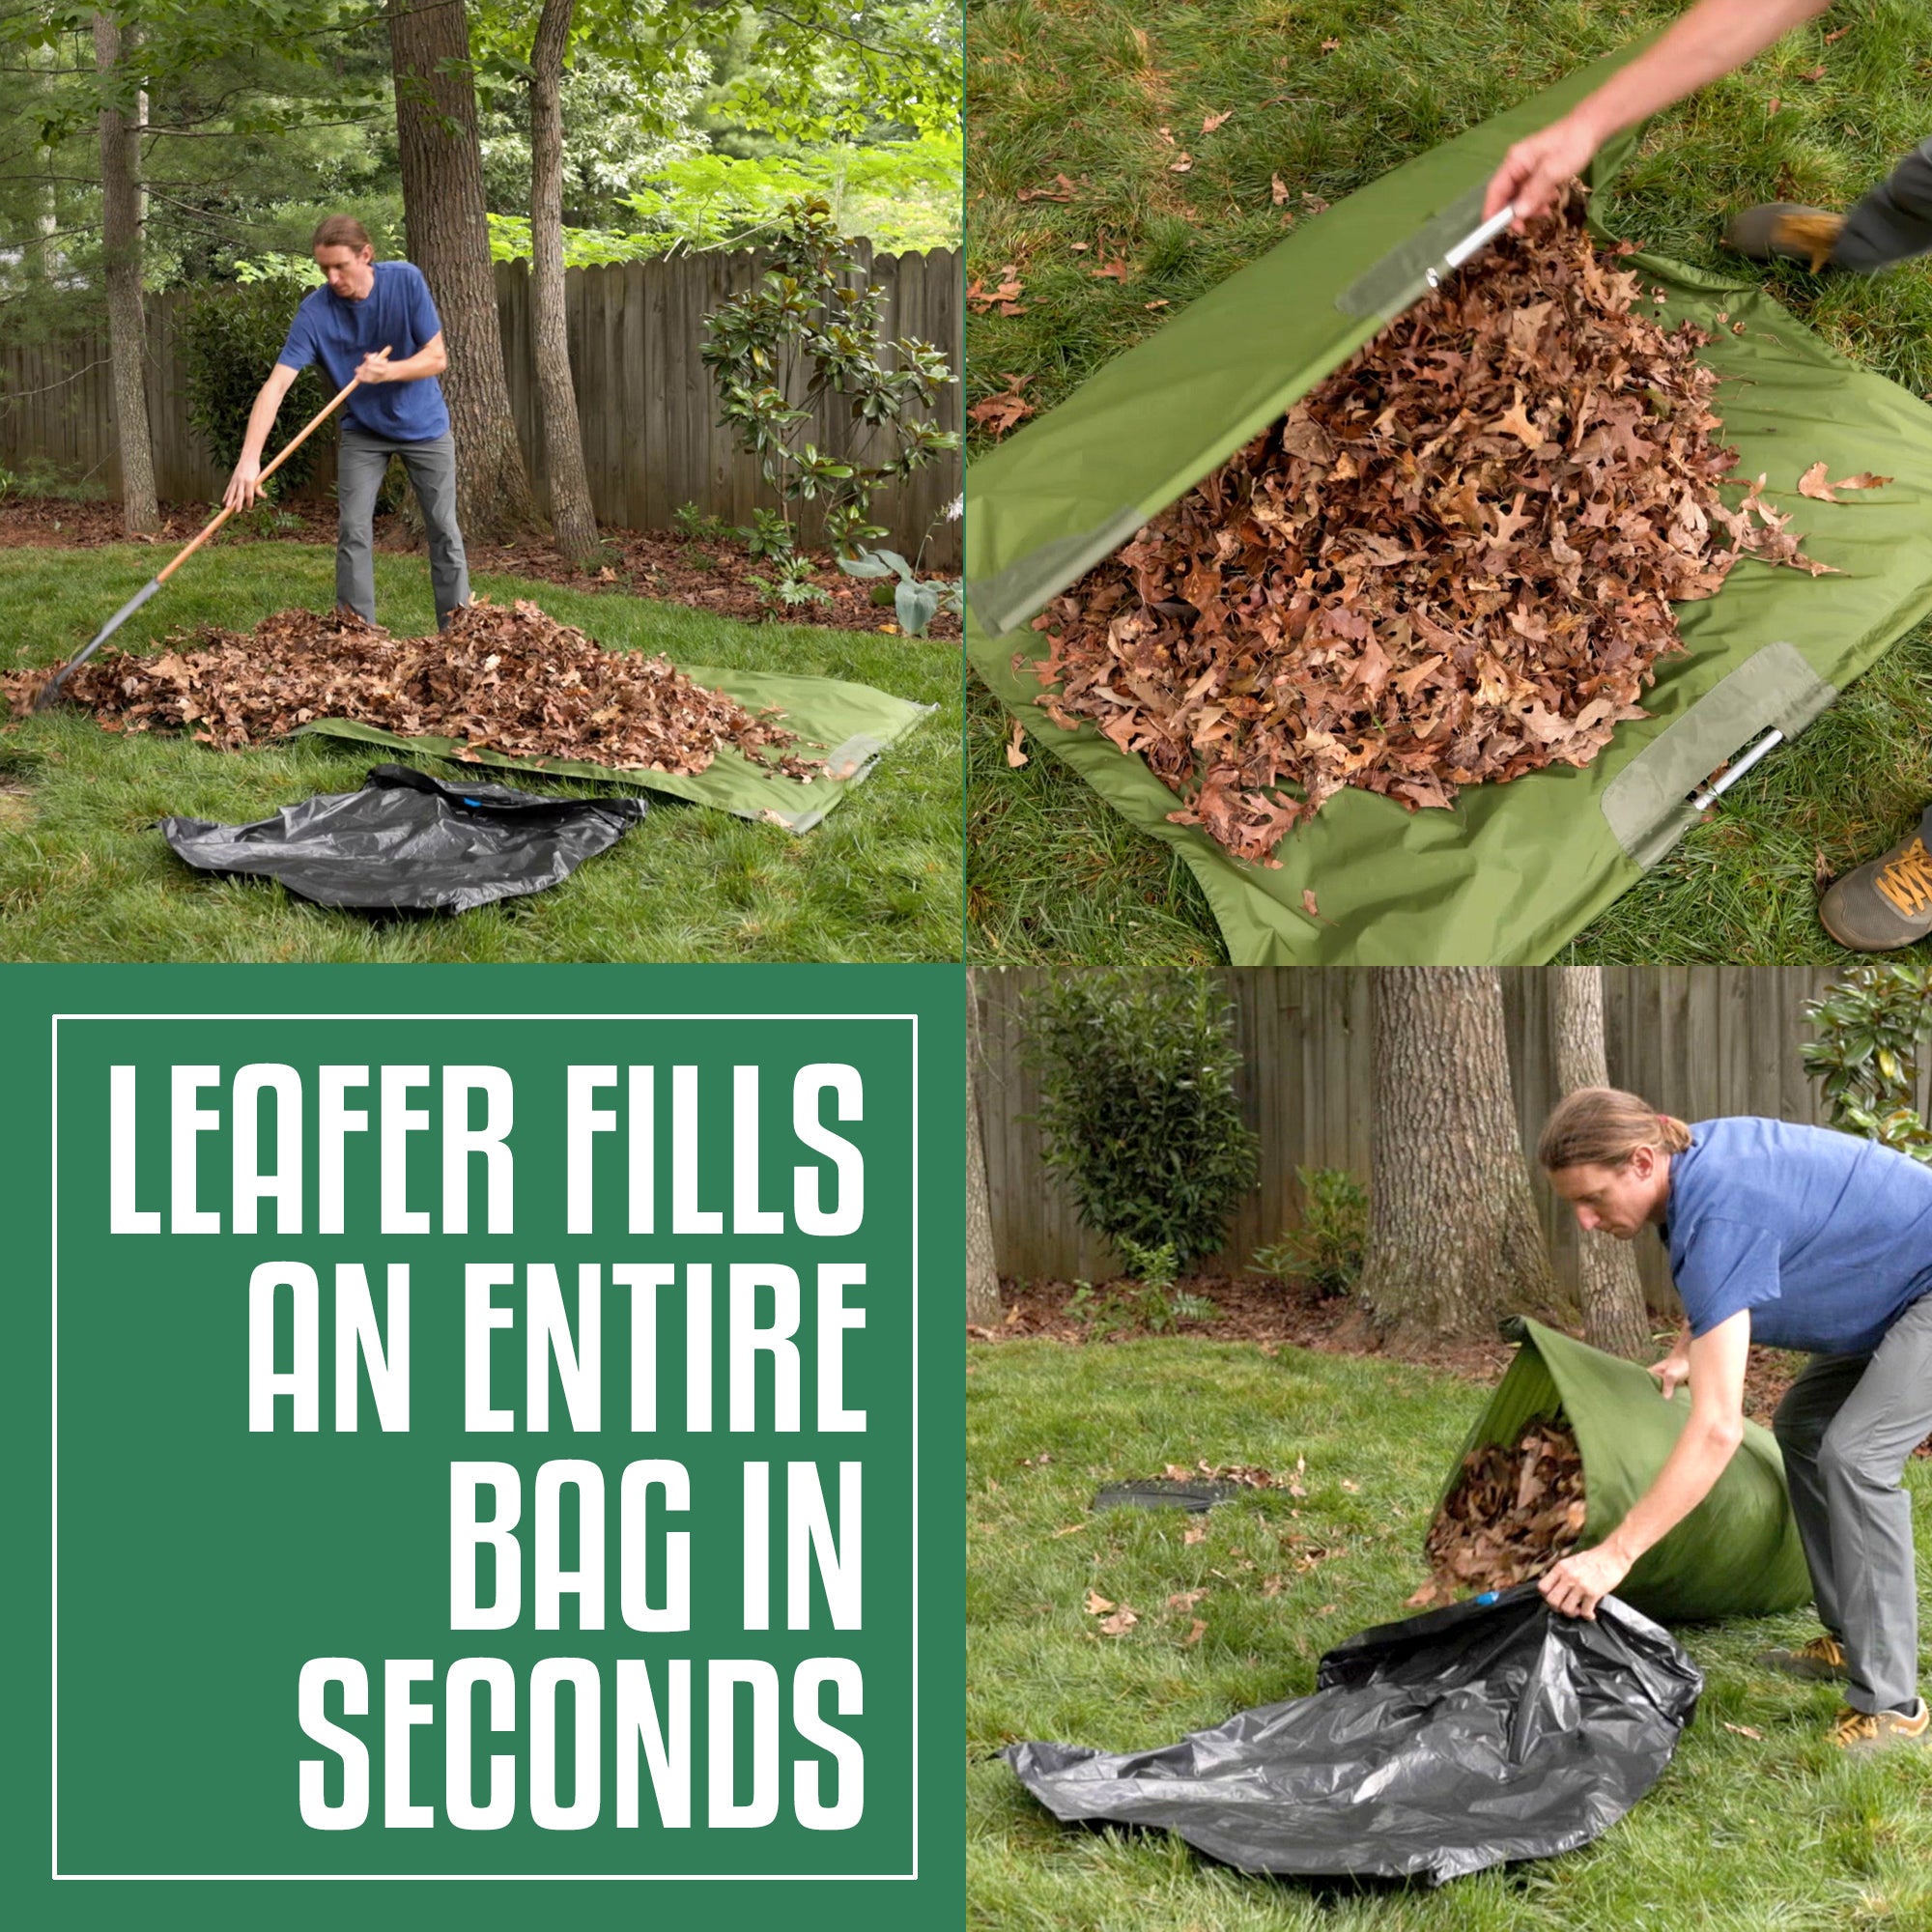 Leaf Bag For Collecting Leaves,Gardening Bag,Leaf Bag Garden Lawn